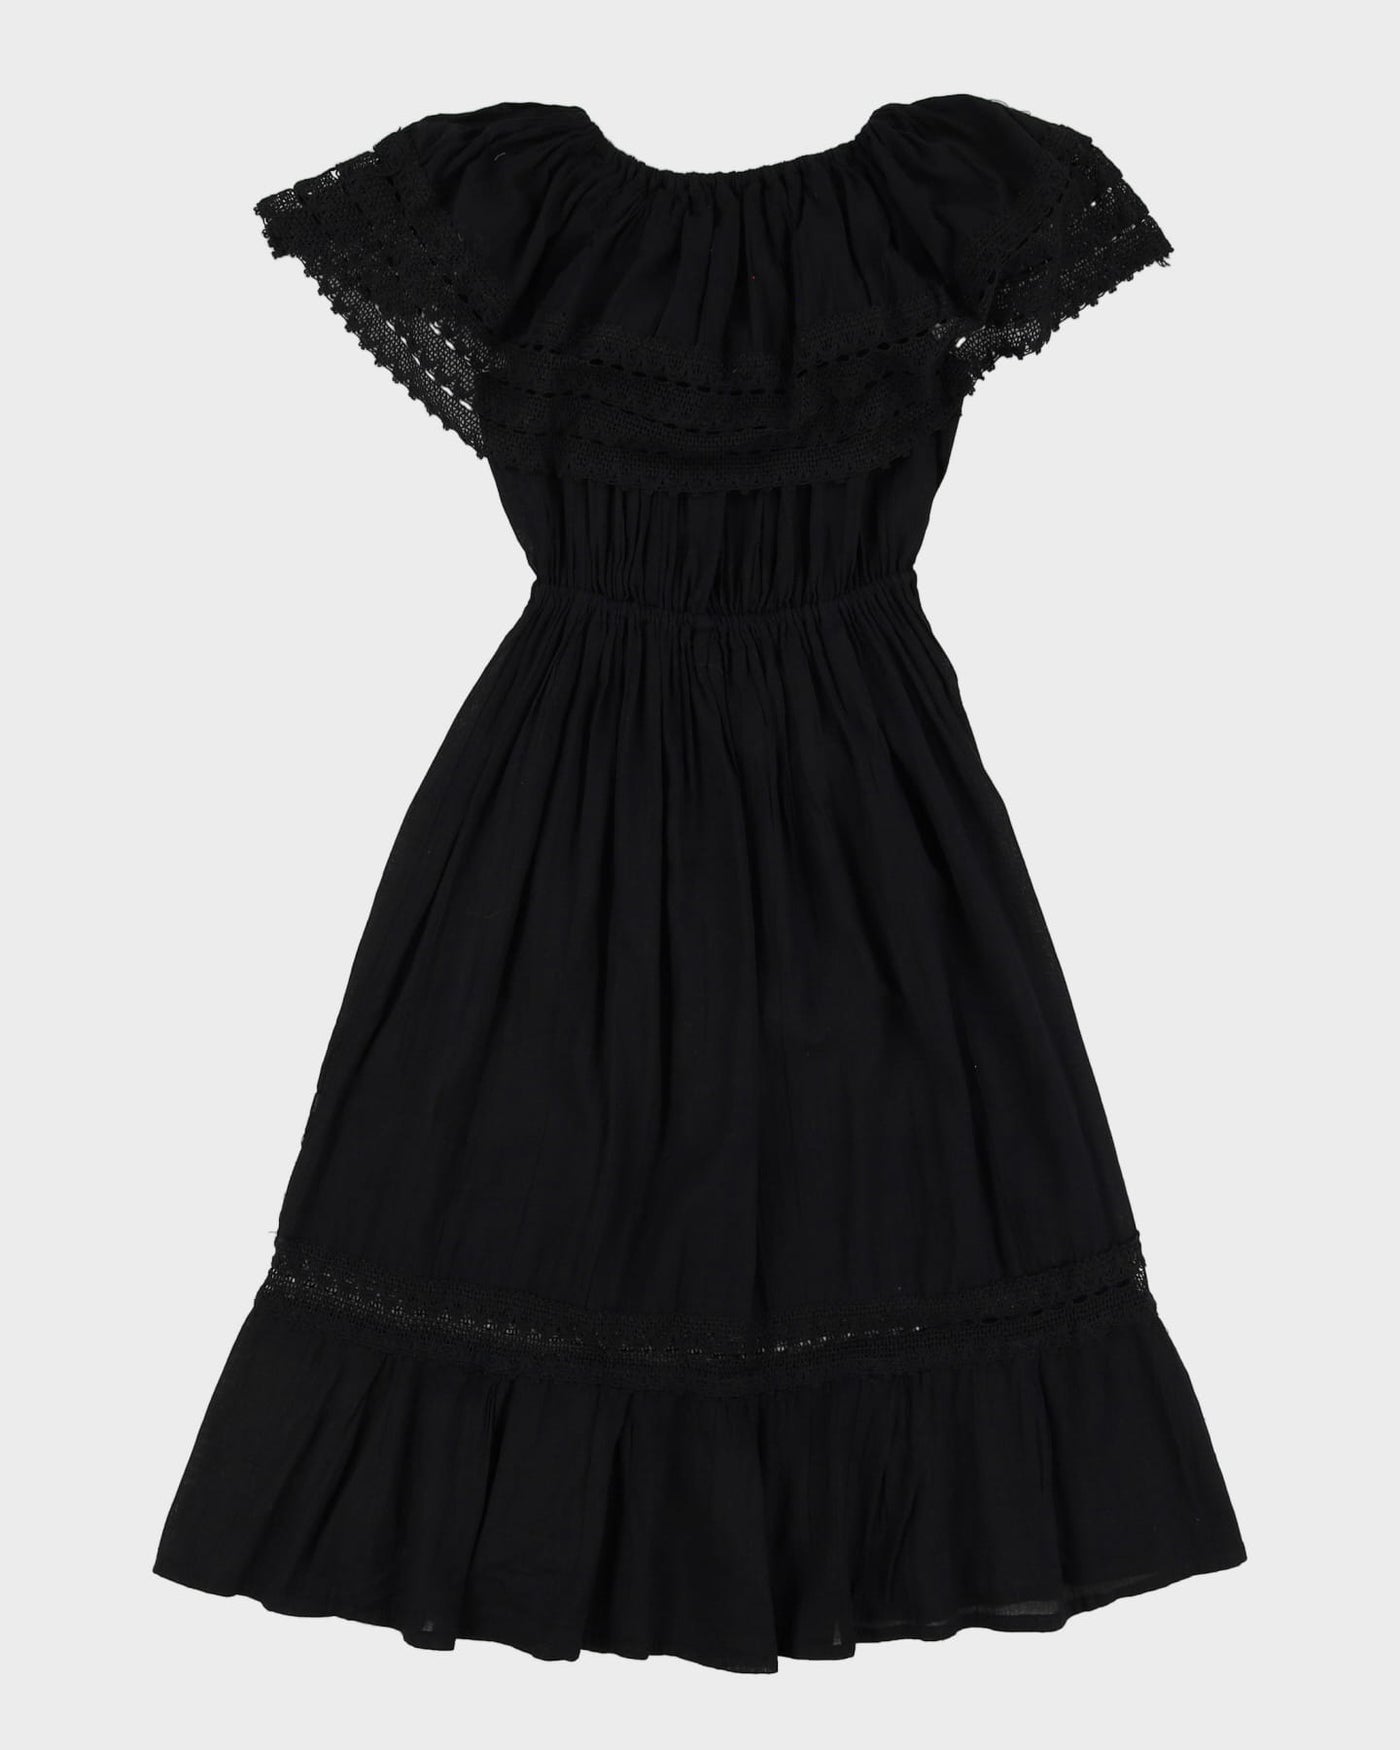 Black Embroidered Off The Shoulder Dress - S